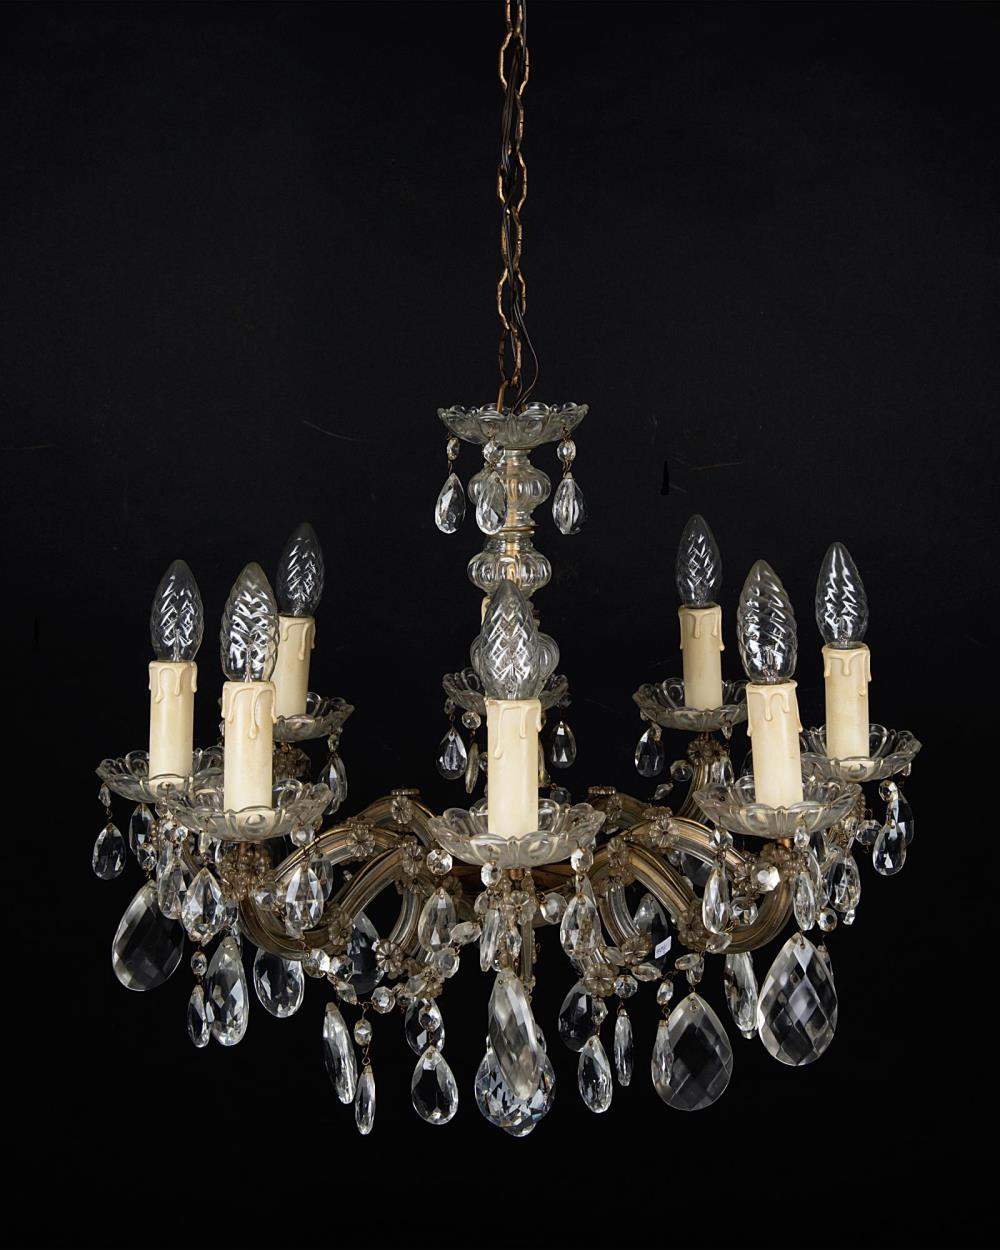 lustre à pendeloques en verre de Murano à 6 feux, années 50-60

H. 52 D. 58 cm